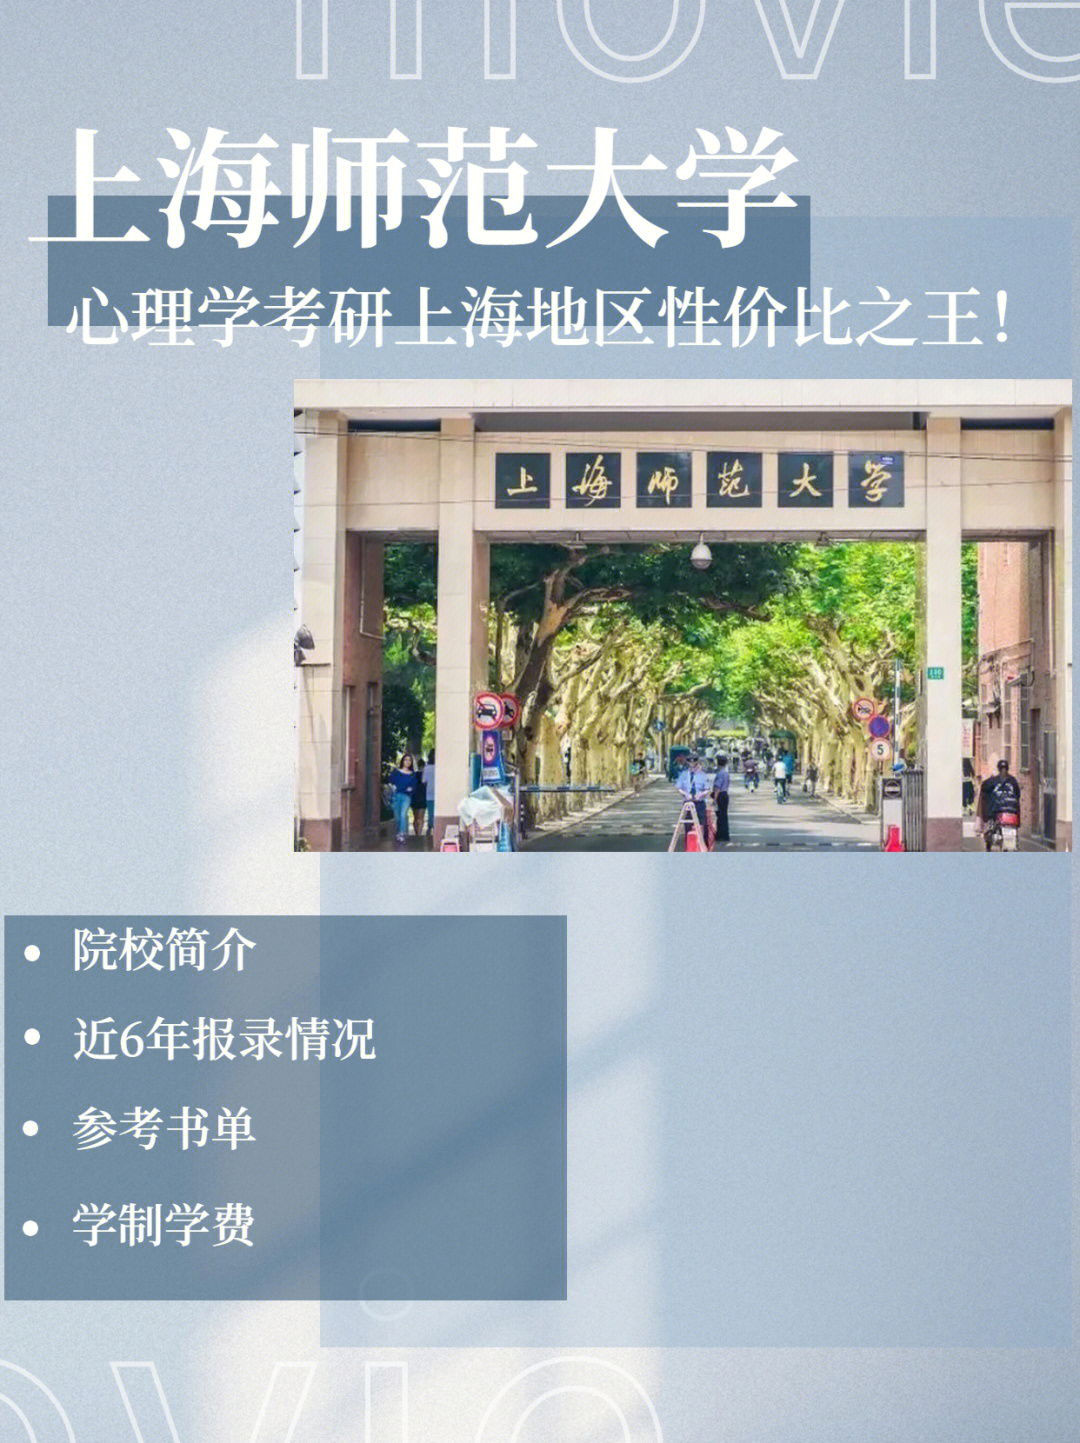 上海师范大学教务处图片